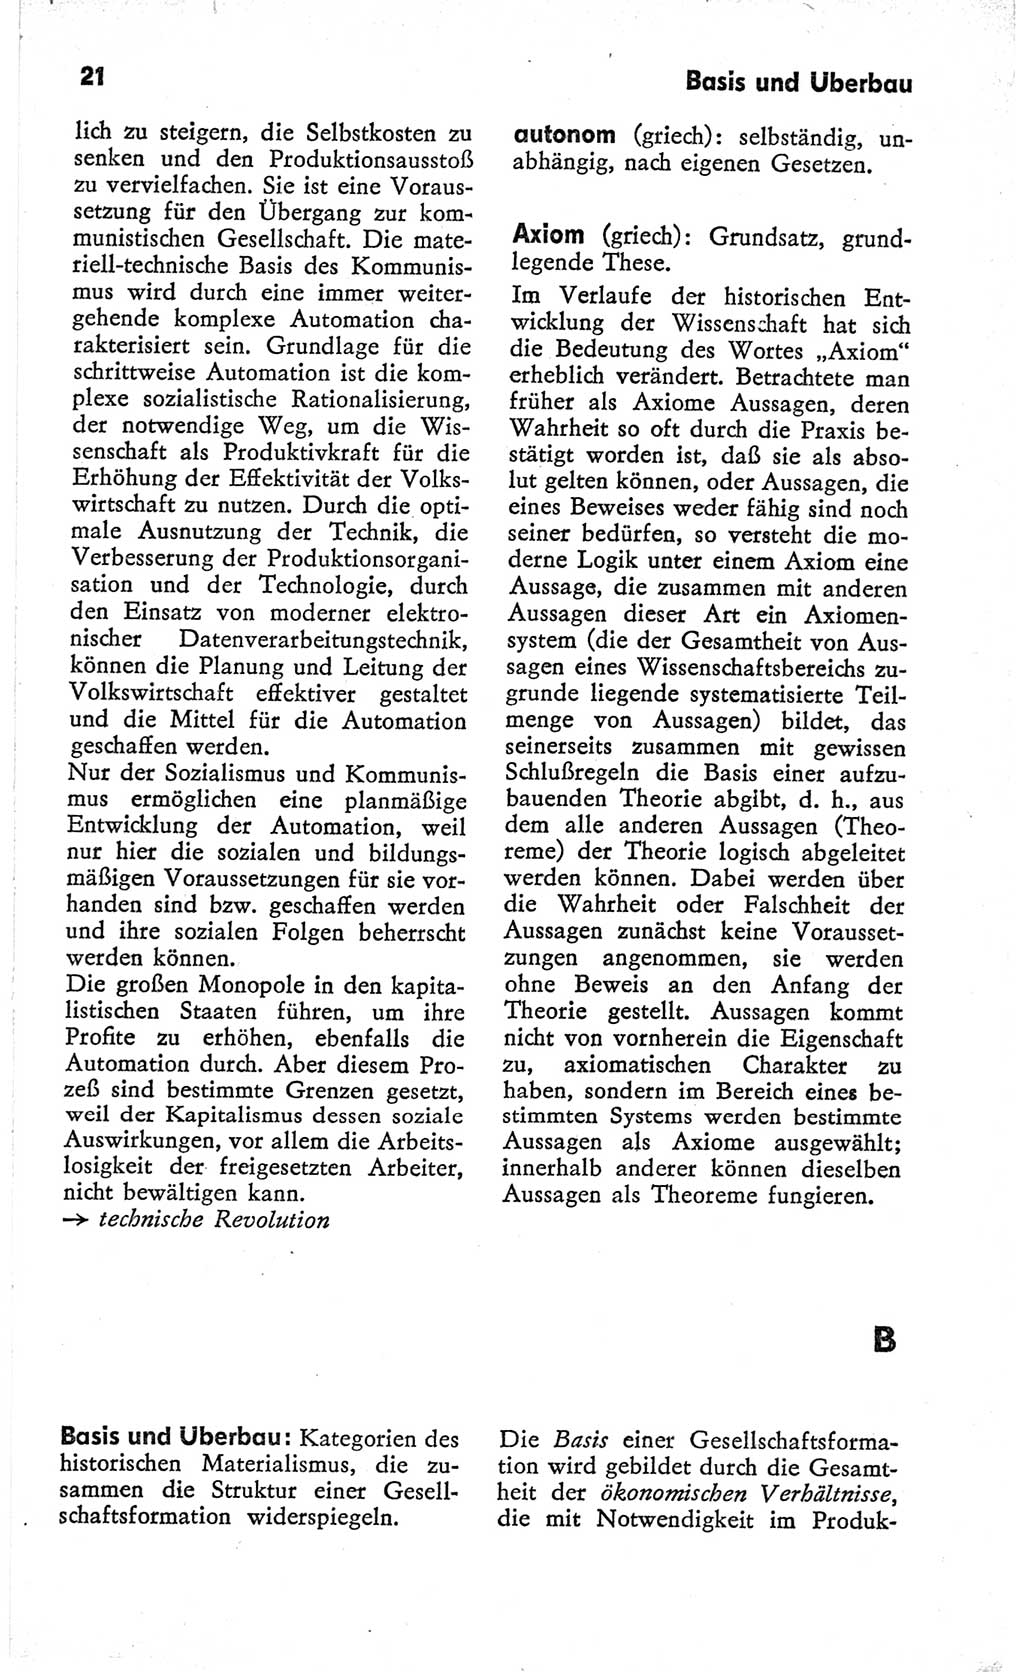 Kleines Wörterbuch der marxistisch-leninistischen Philosophie [Deutsche Demokratische Republik (DDR)] 1966, Seite 21 (Kl. Wb. ML Phil. DDR 1966, S. 21)